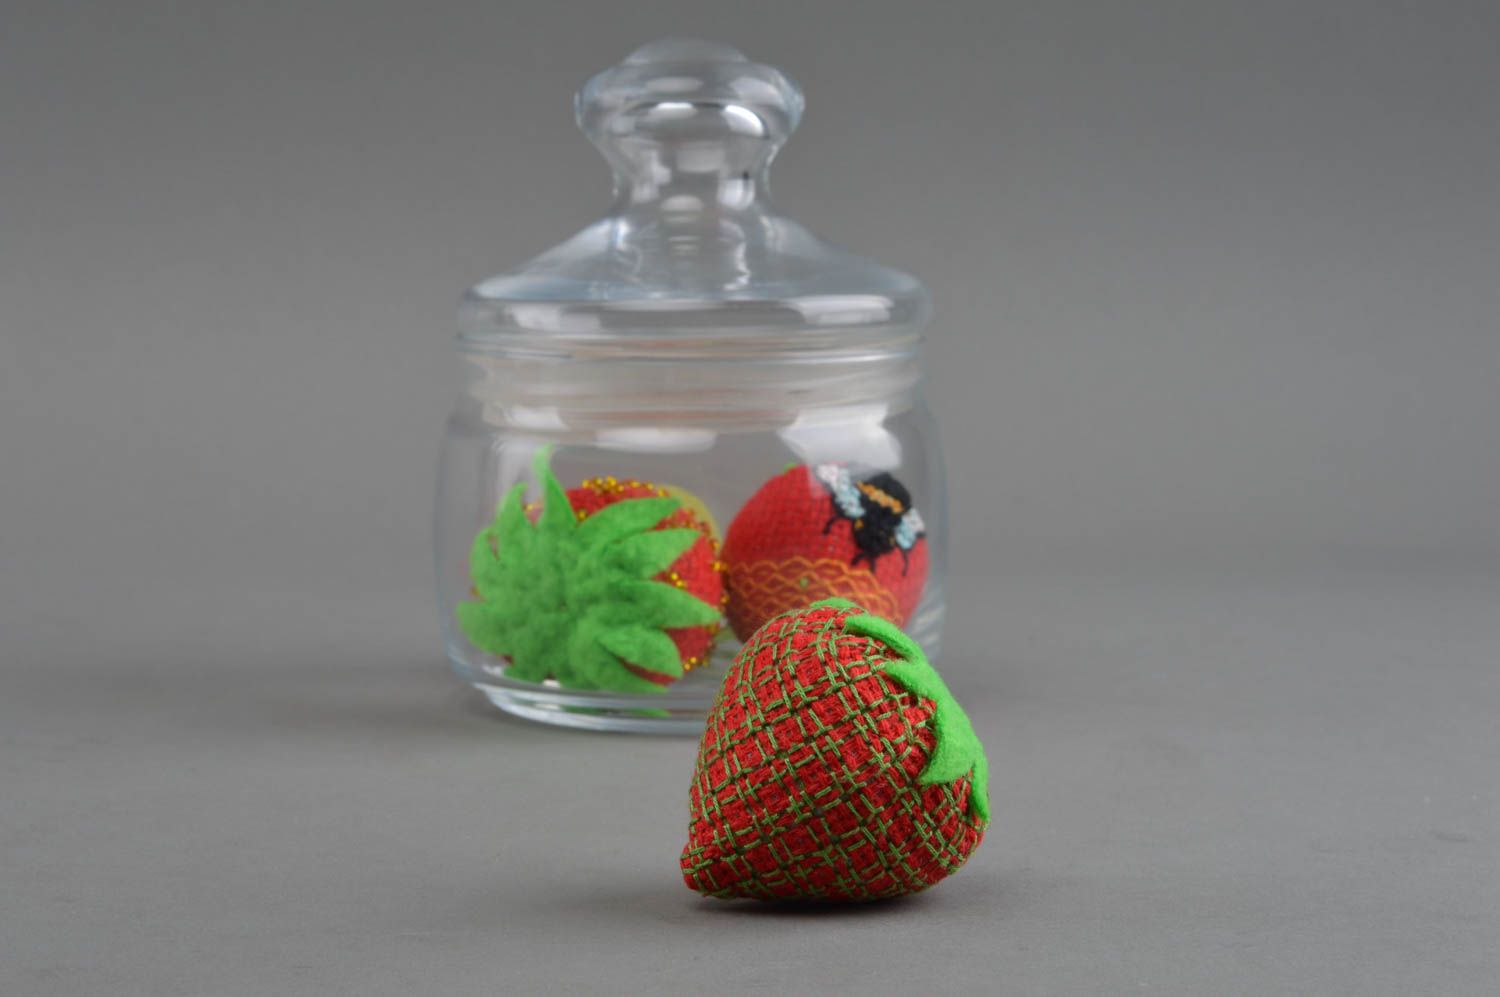 Интерьерная игрушка клубника из канвы с вышивкой красная ручной работы фото 1